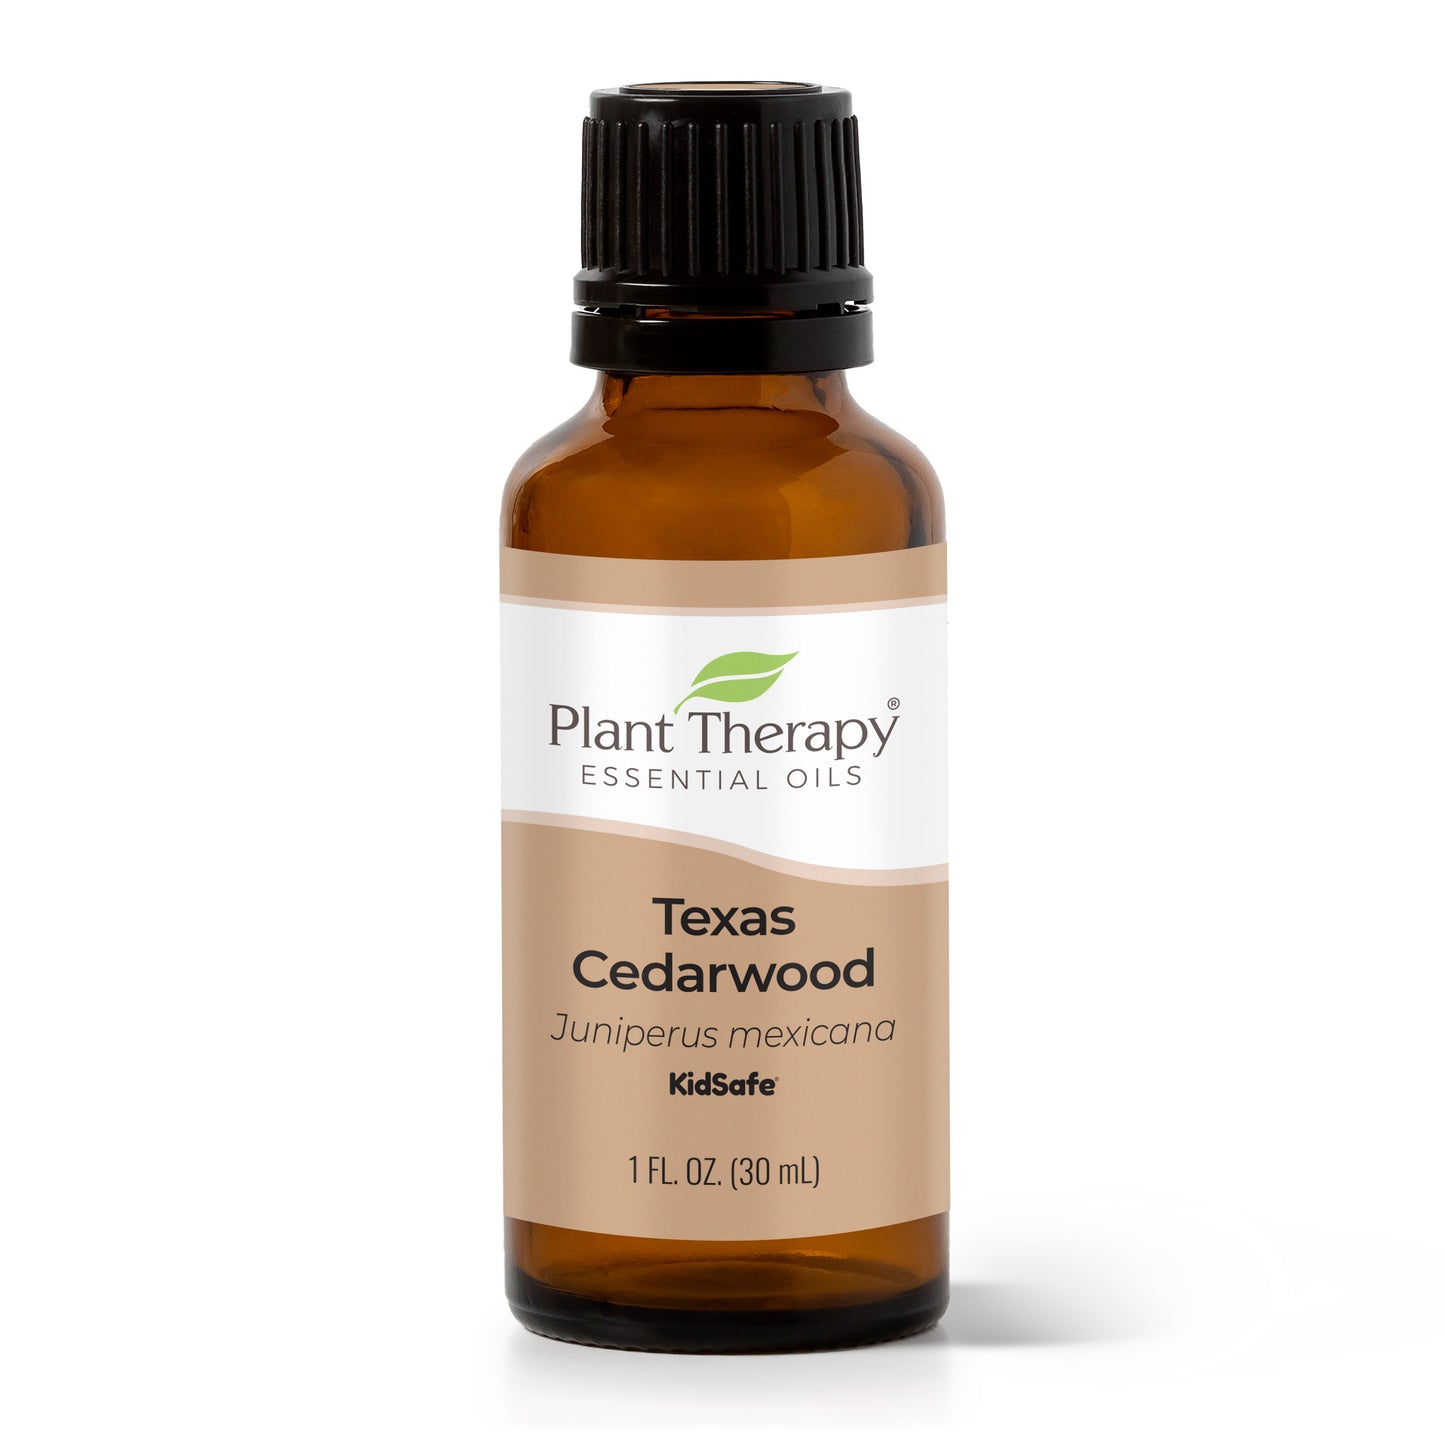 Texas Cedarwood Essential Oil